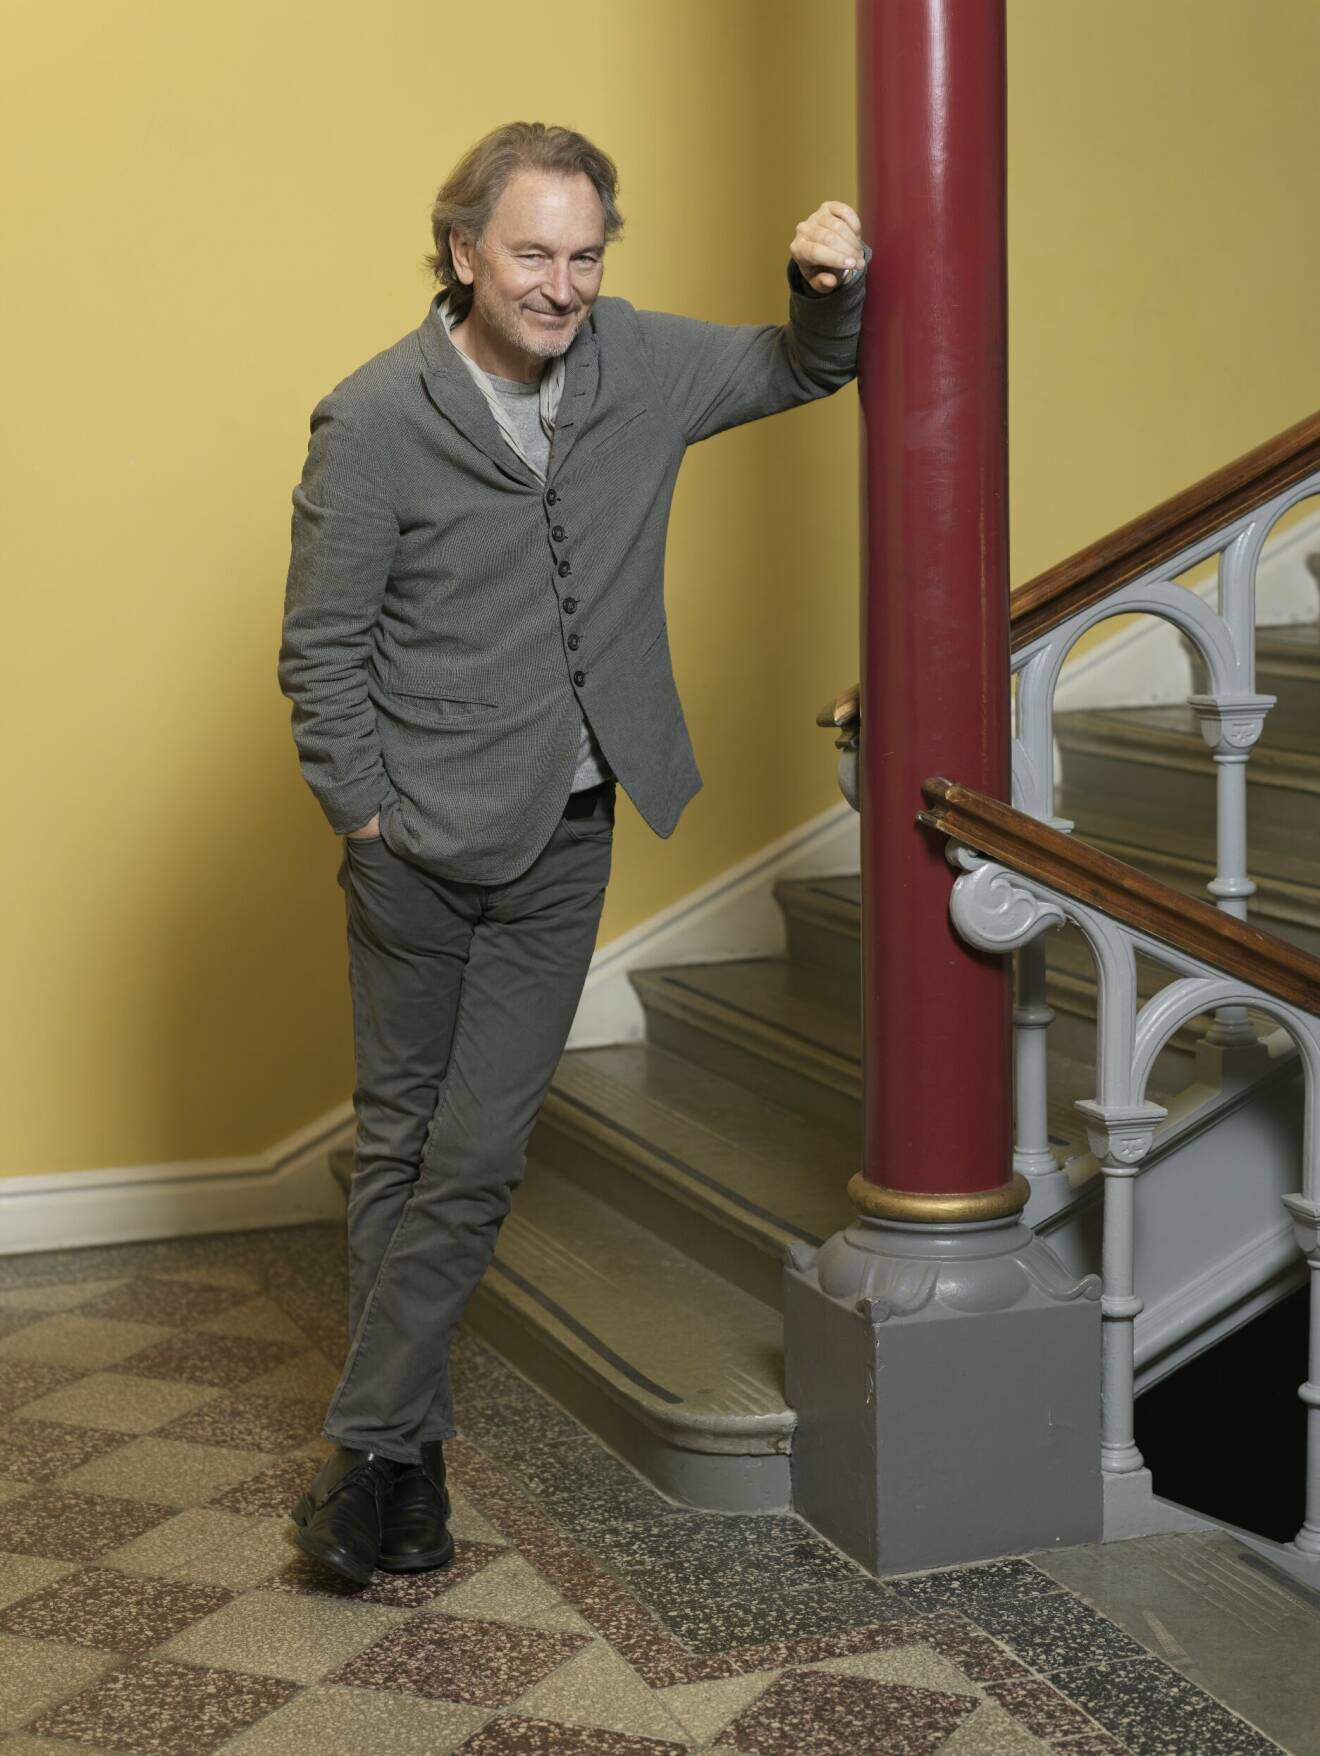 Tomas Ledin i grå kostym, lutar sig mot en röd pelare i ett gult trapphus.